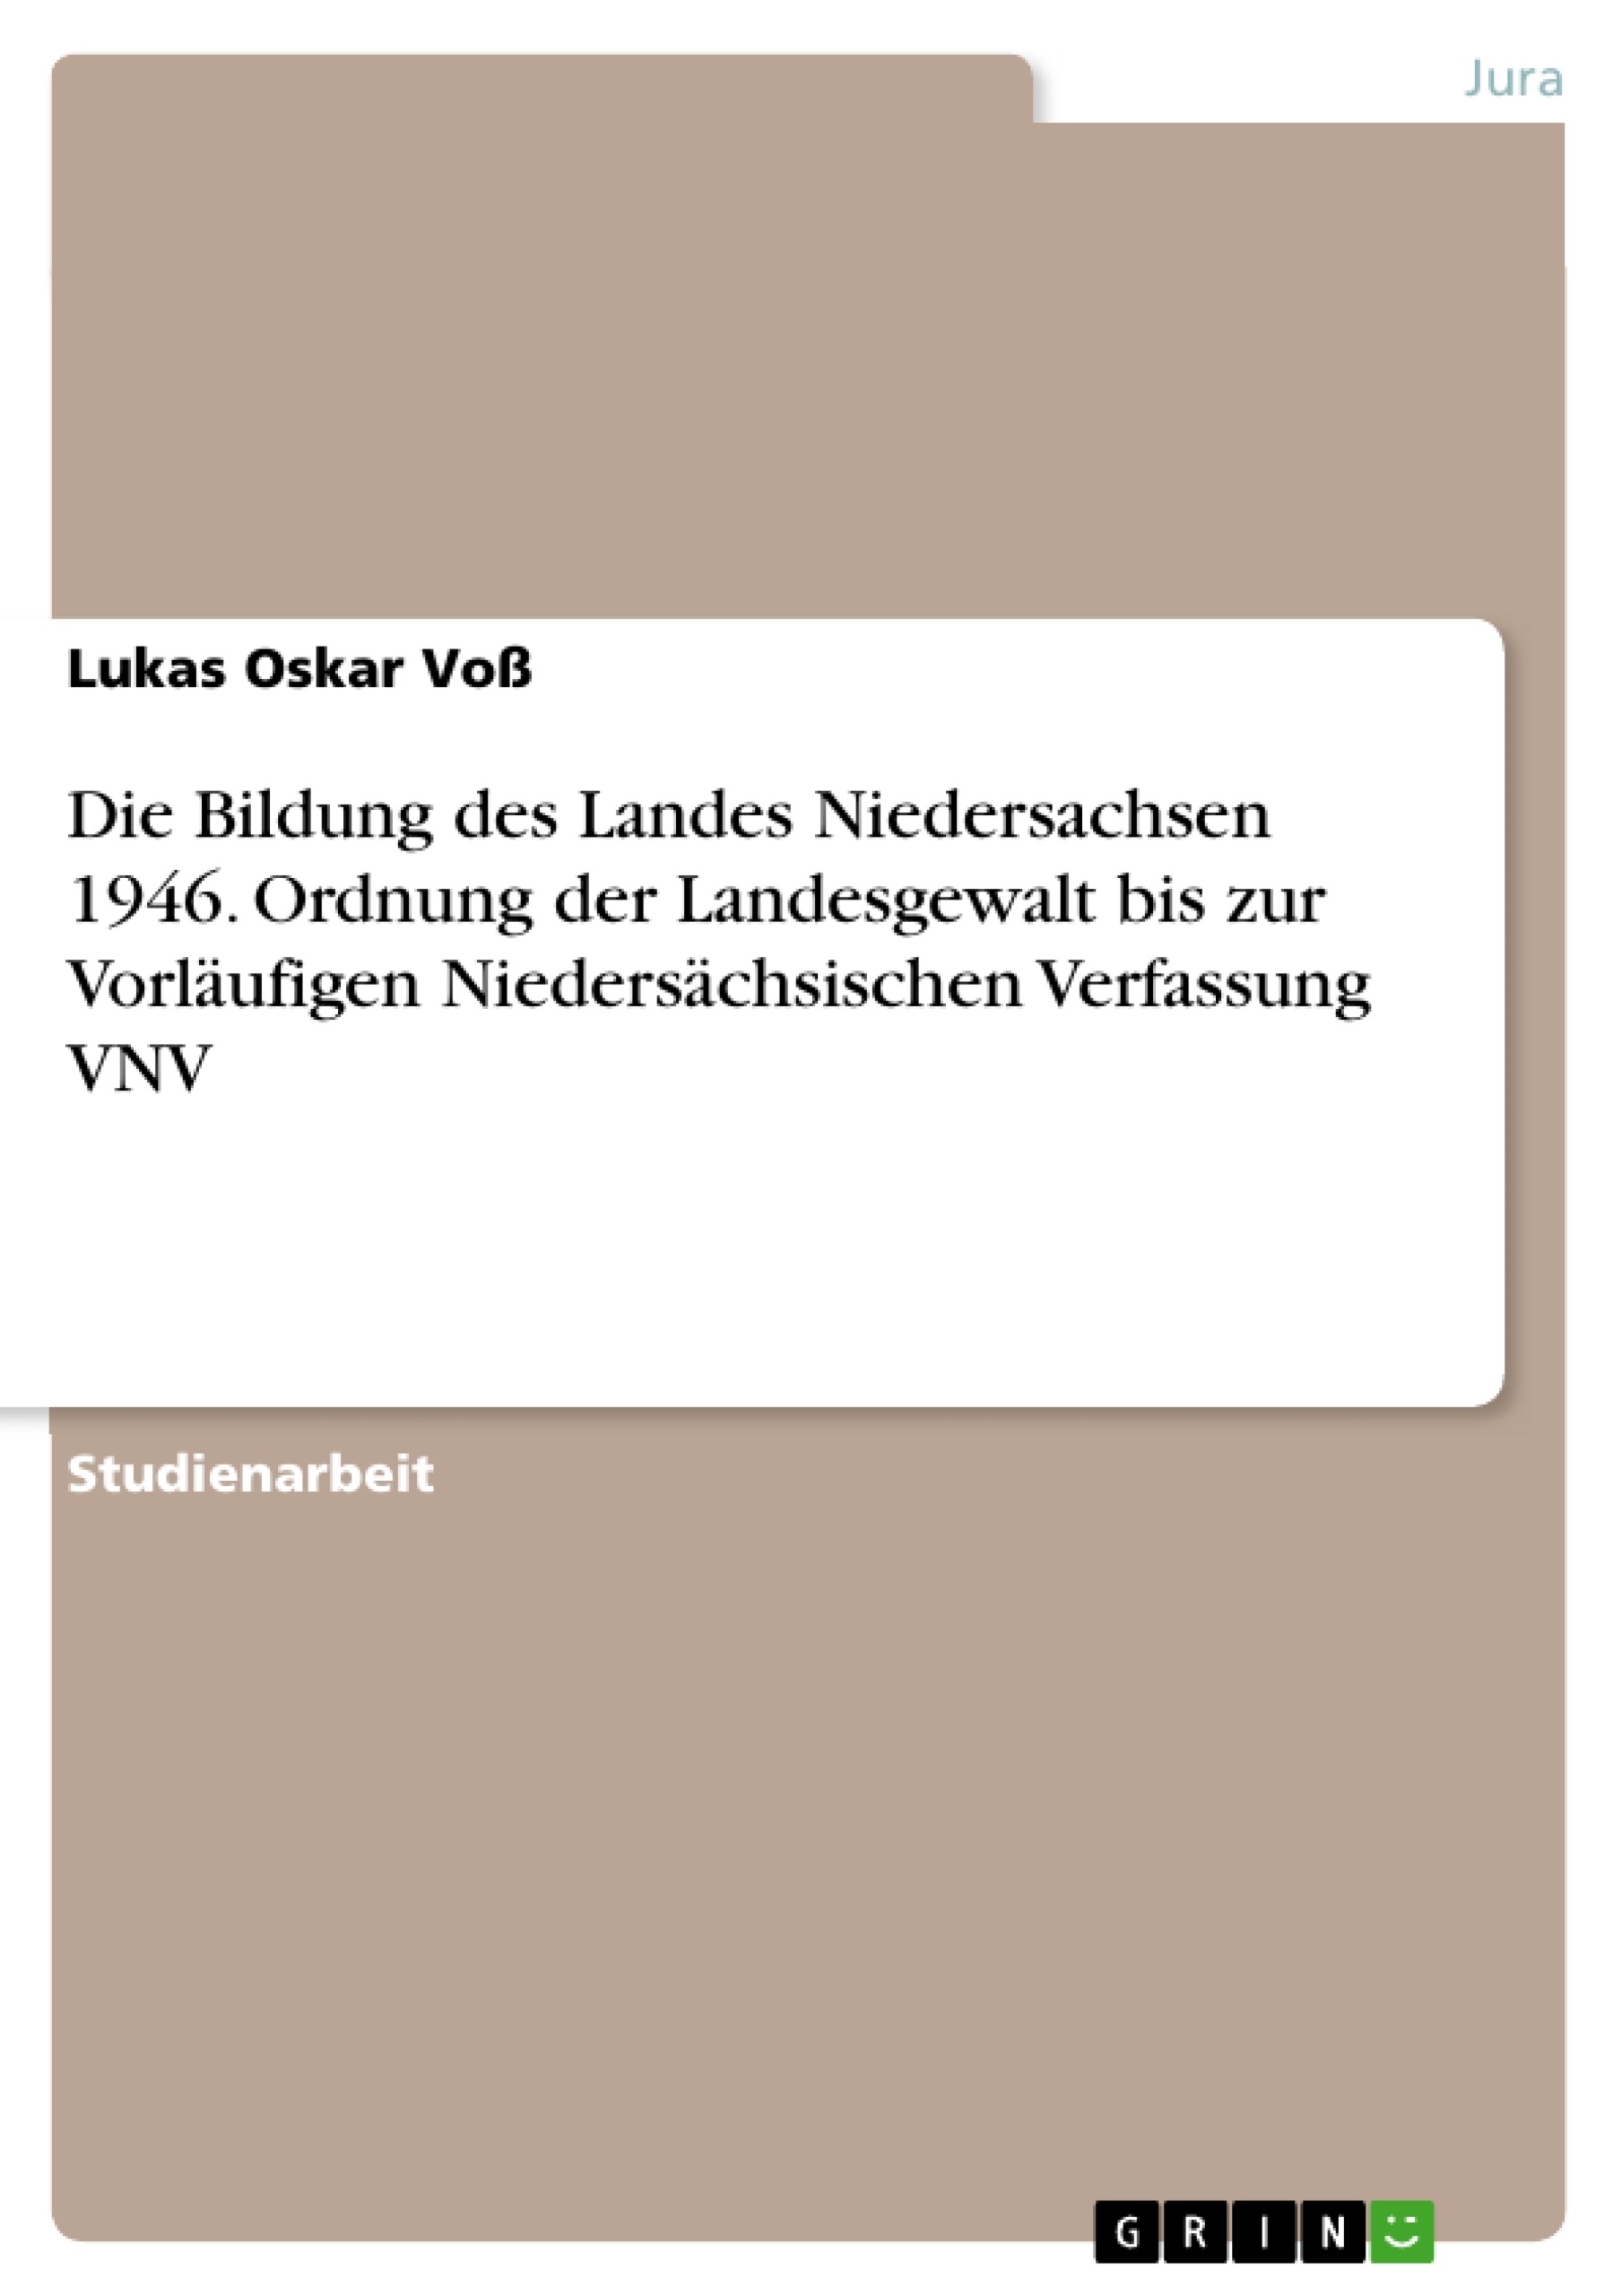 Titre: Die Bildung des Landes Niedersachsen 1946. Ordnung der Landesgewalt bis zur Vorläufigen Niedersächsischen Verfassung VNV